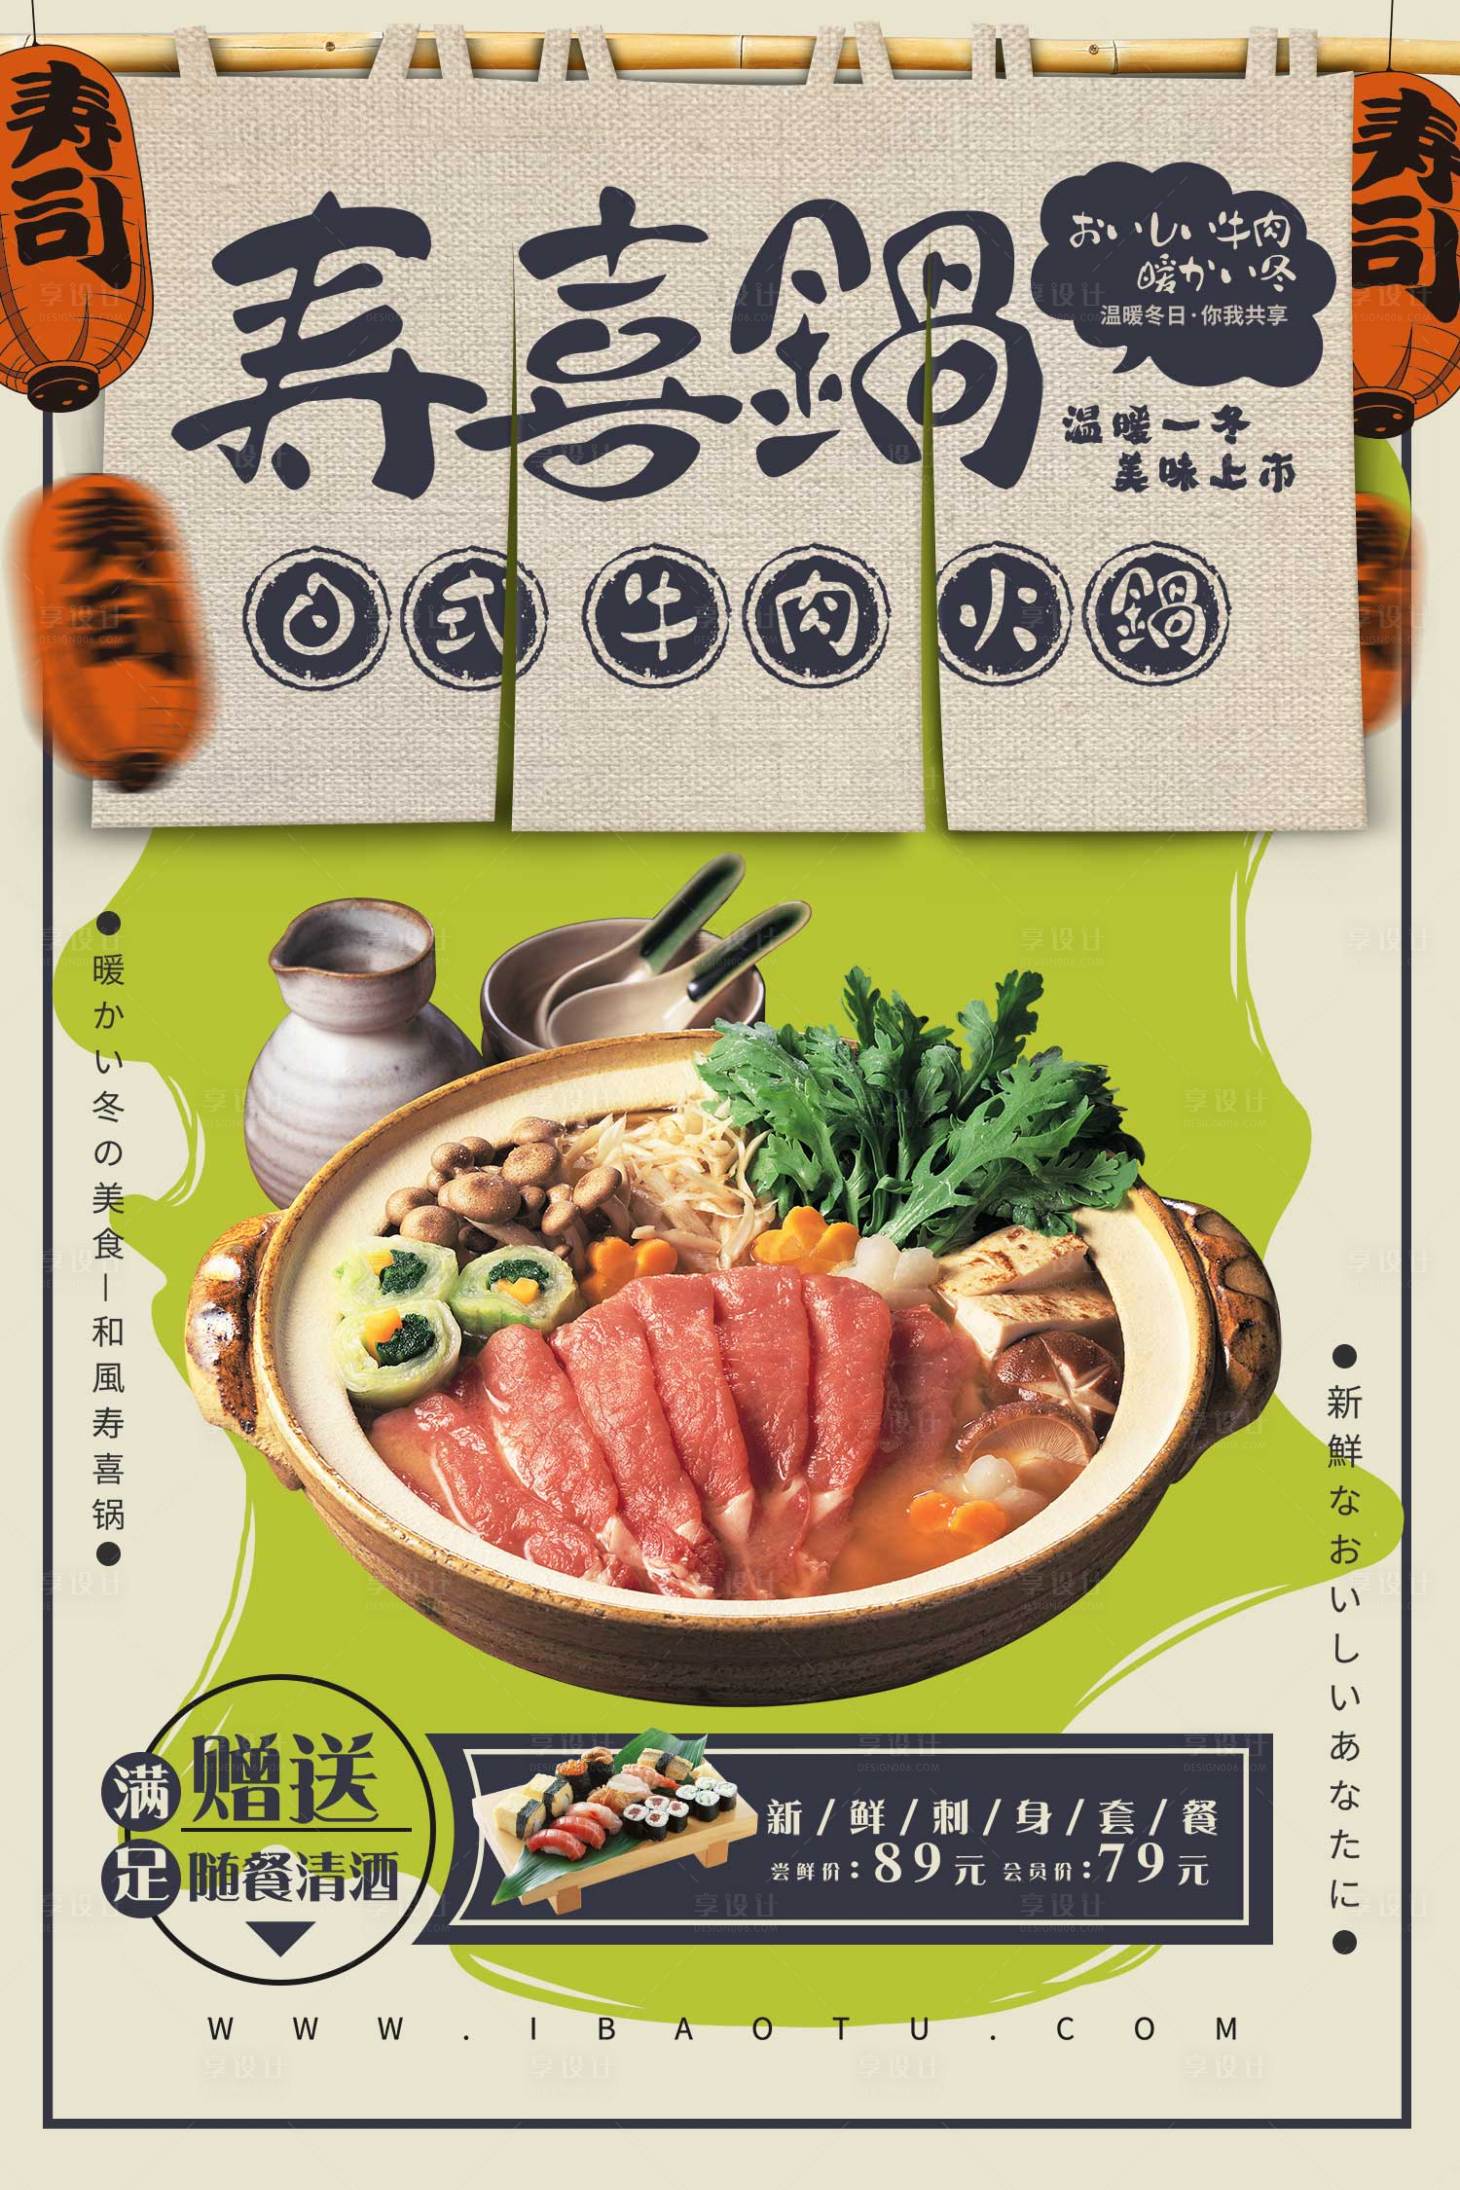 餐饮美食牛肉火锅新店开业手机海报_图片模板素材-稿定设计